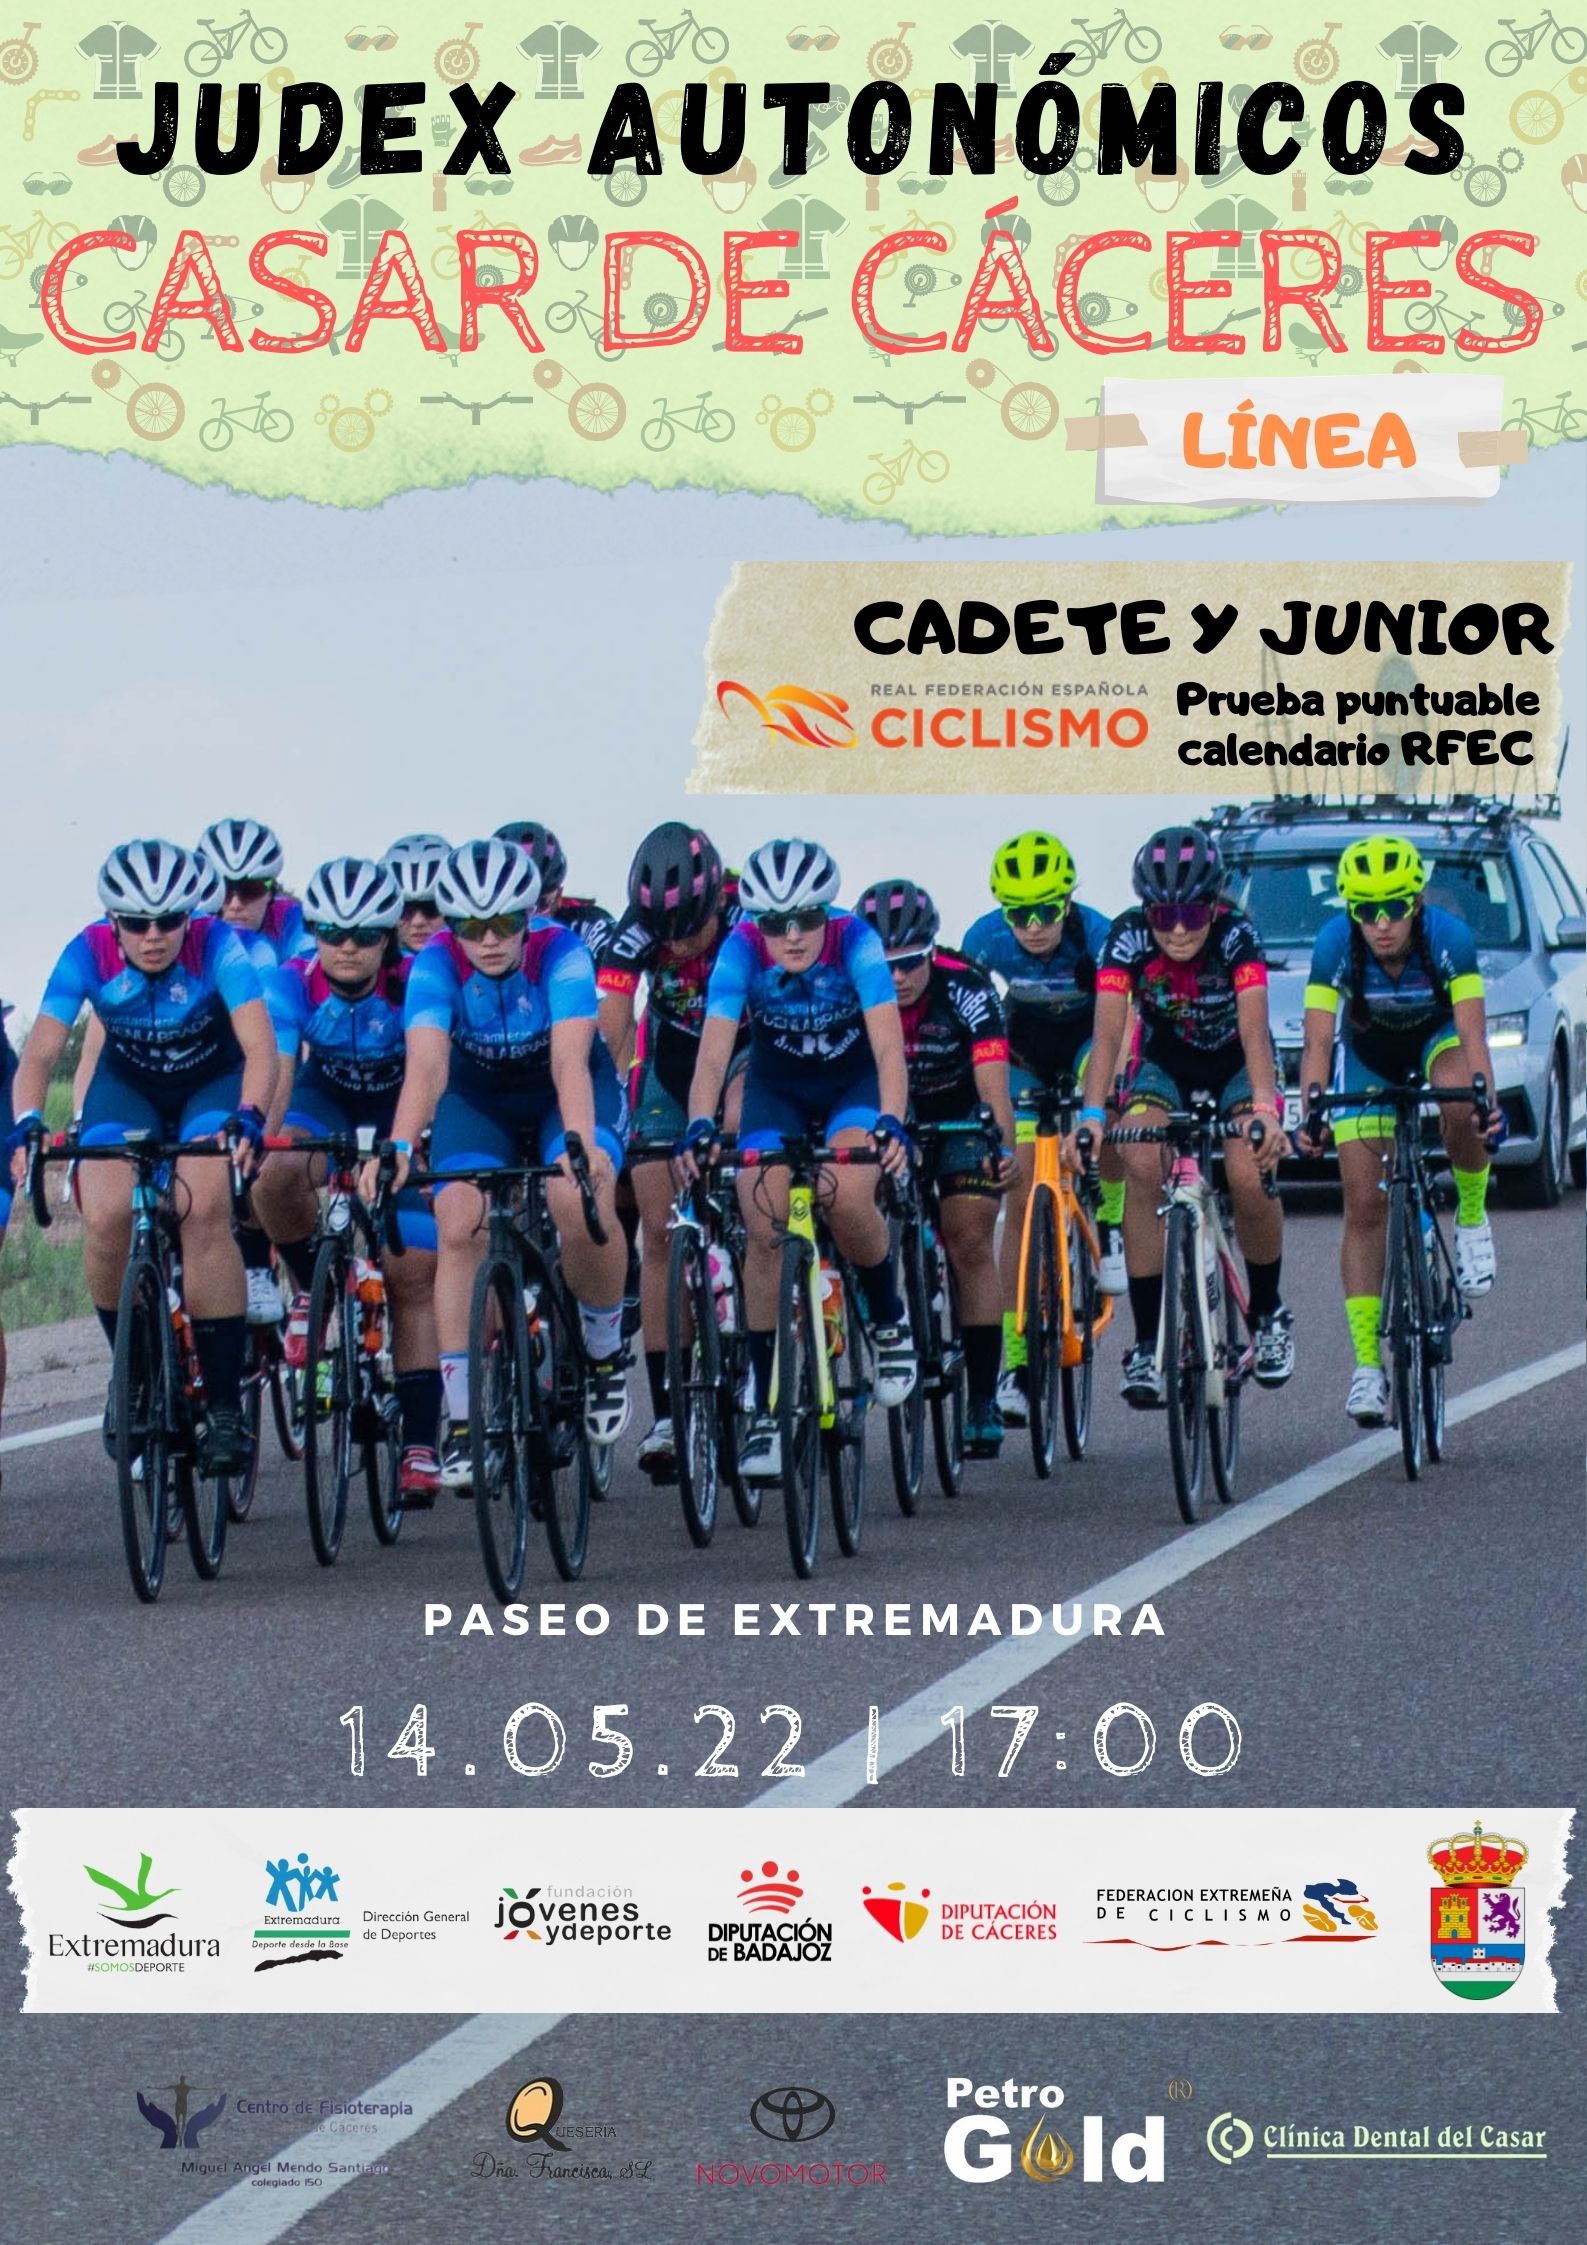 Casar de Cáceres acogerá la prueba de los Judex de ciclismo este sábado con unos 350 participantes